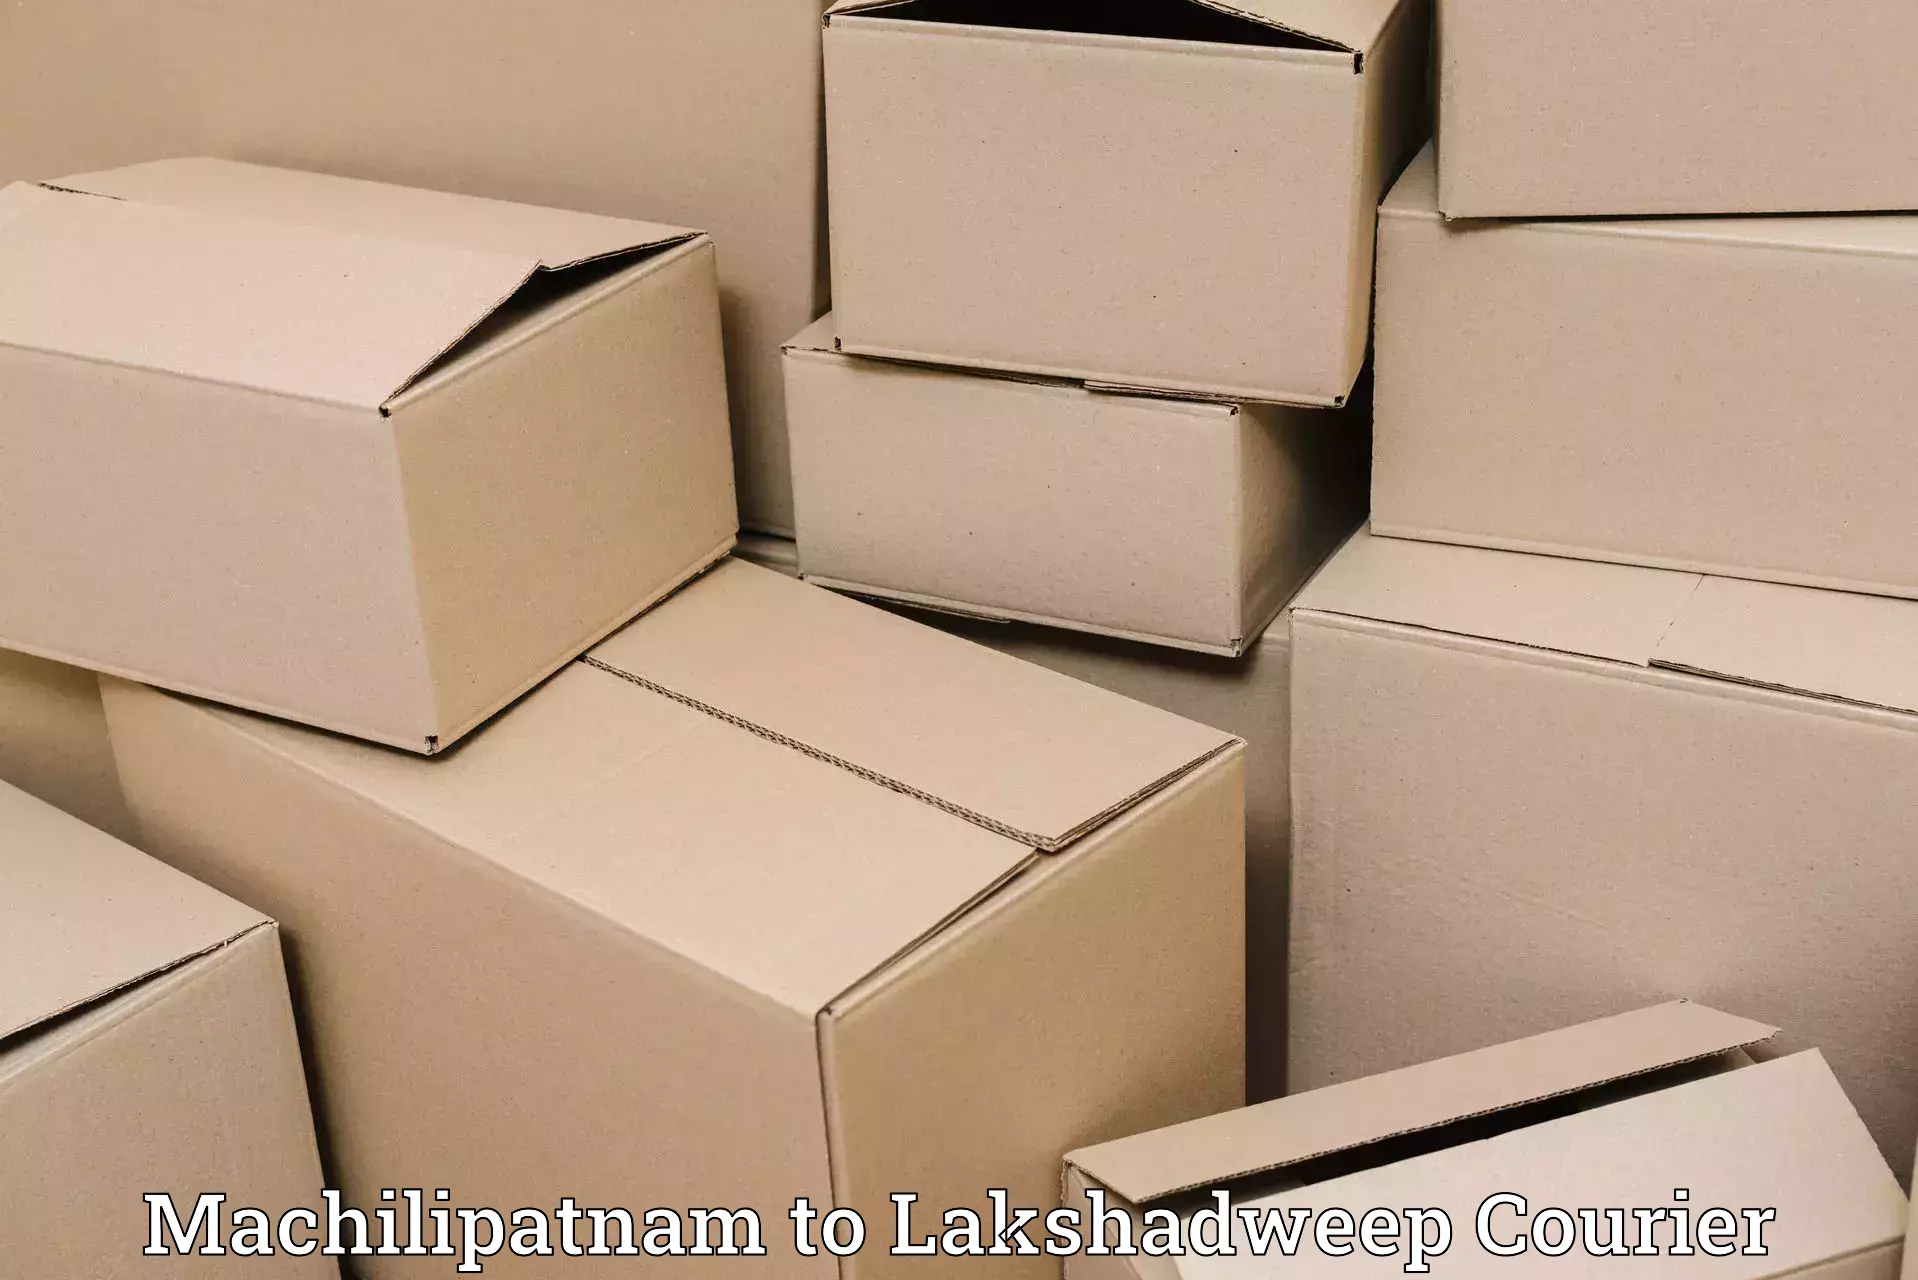 International shipping rates Machilipatnam to Lakshadweep